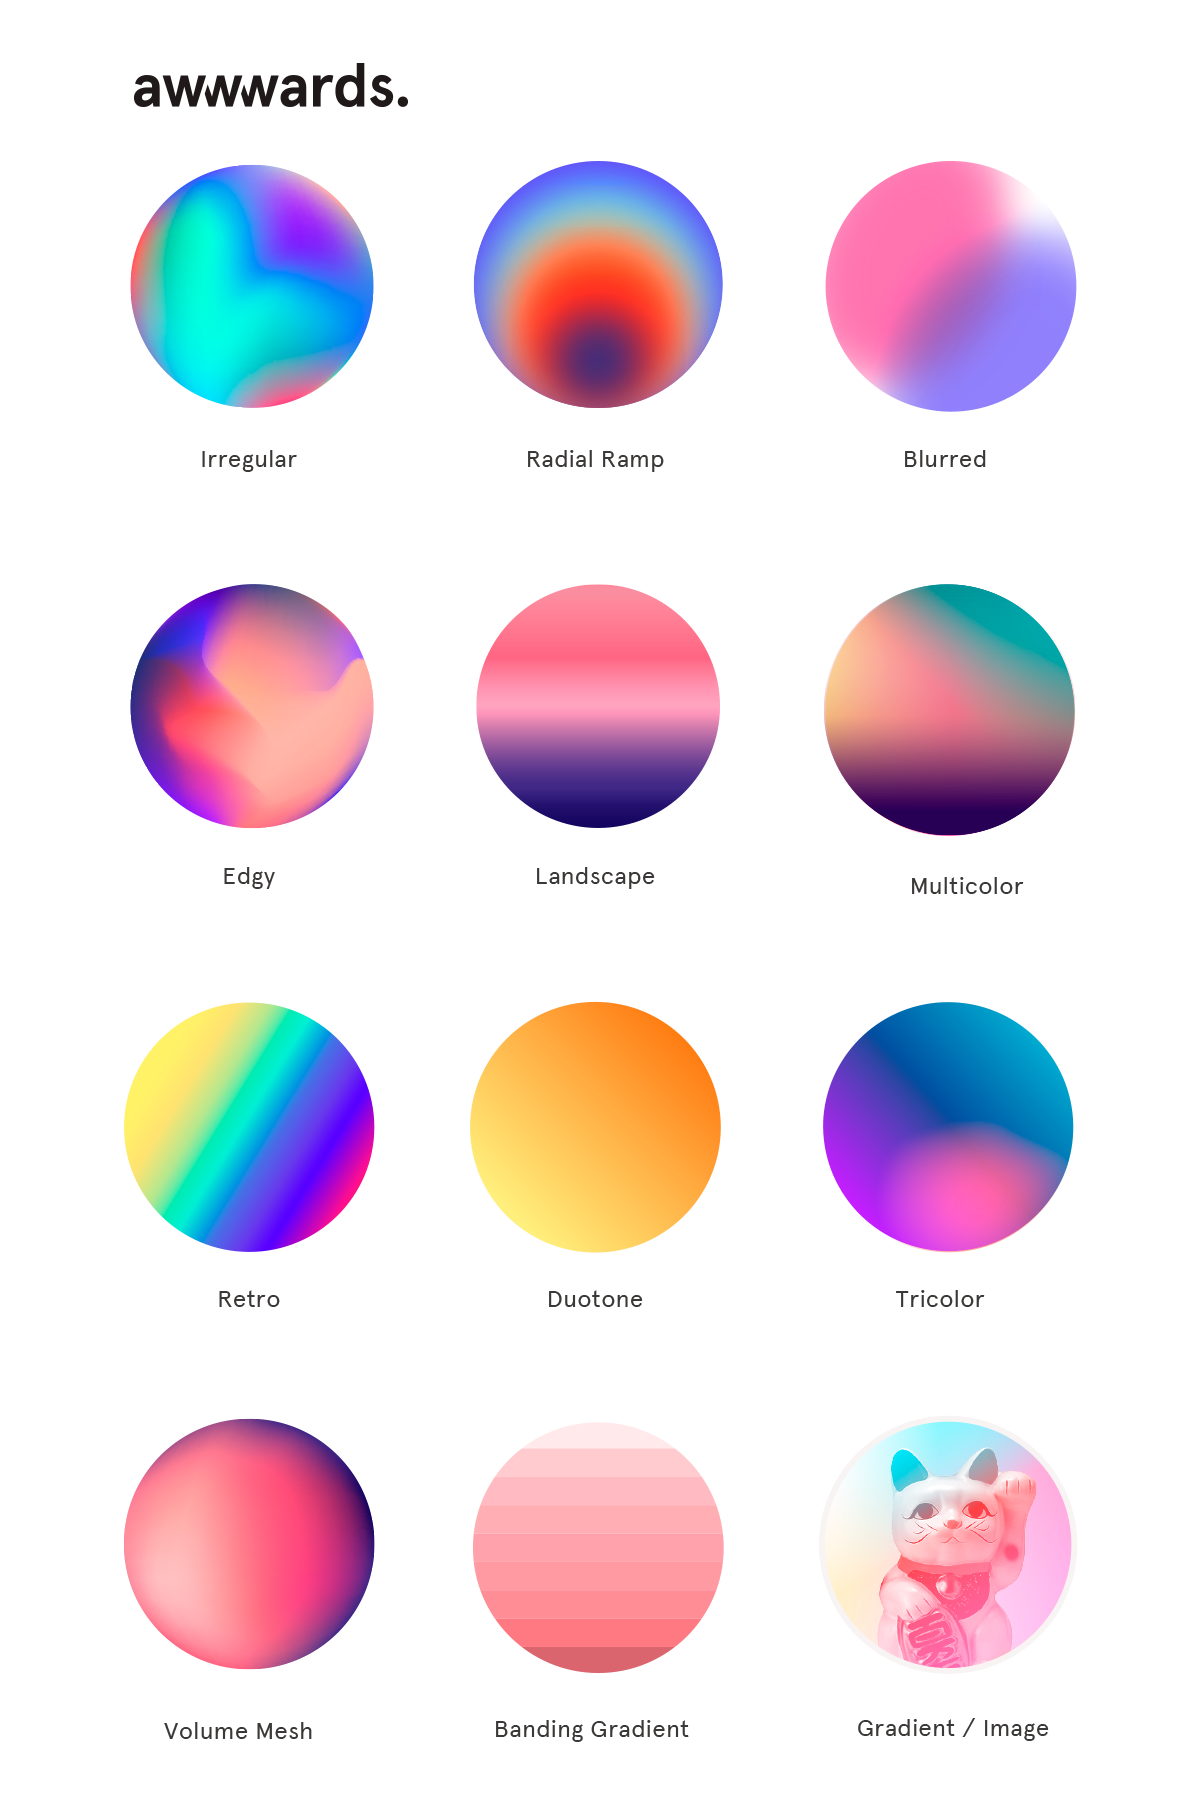 Màu sắc là một yếu tố cực kỳ quan trọng trong thiết kế. Xem những hình ảnh về màu sắc và xu hướng màu sắc sẽ giúp bạn tìm hiểu về các sắc thái màu, cách sử dụng chúng để tạo ra những sản phẩm sáng tạo và độc đáo.